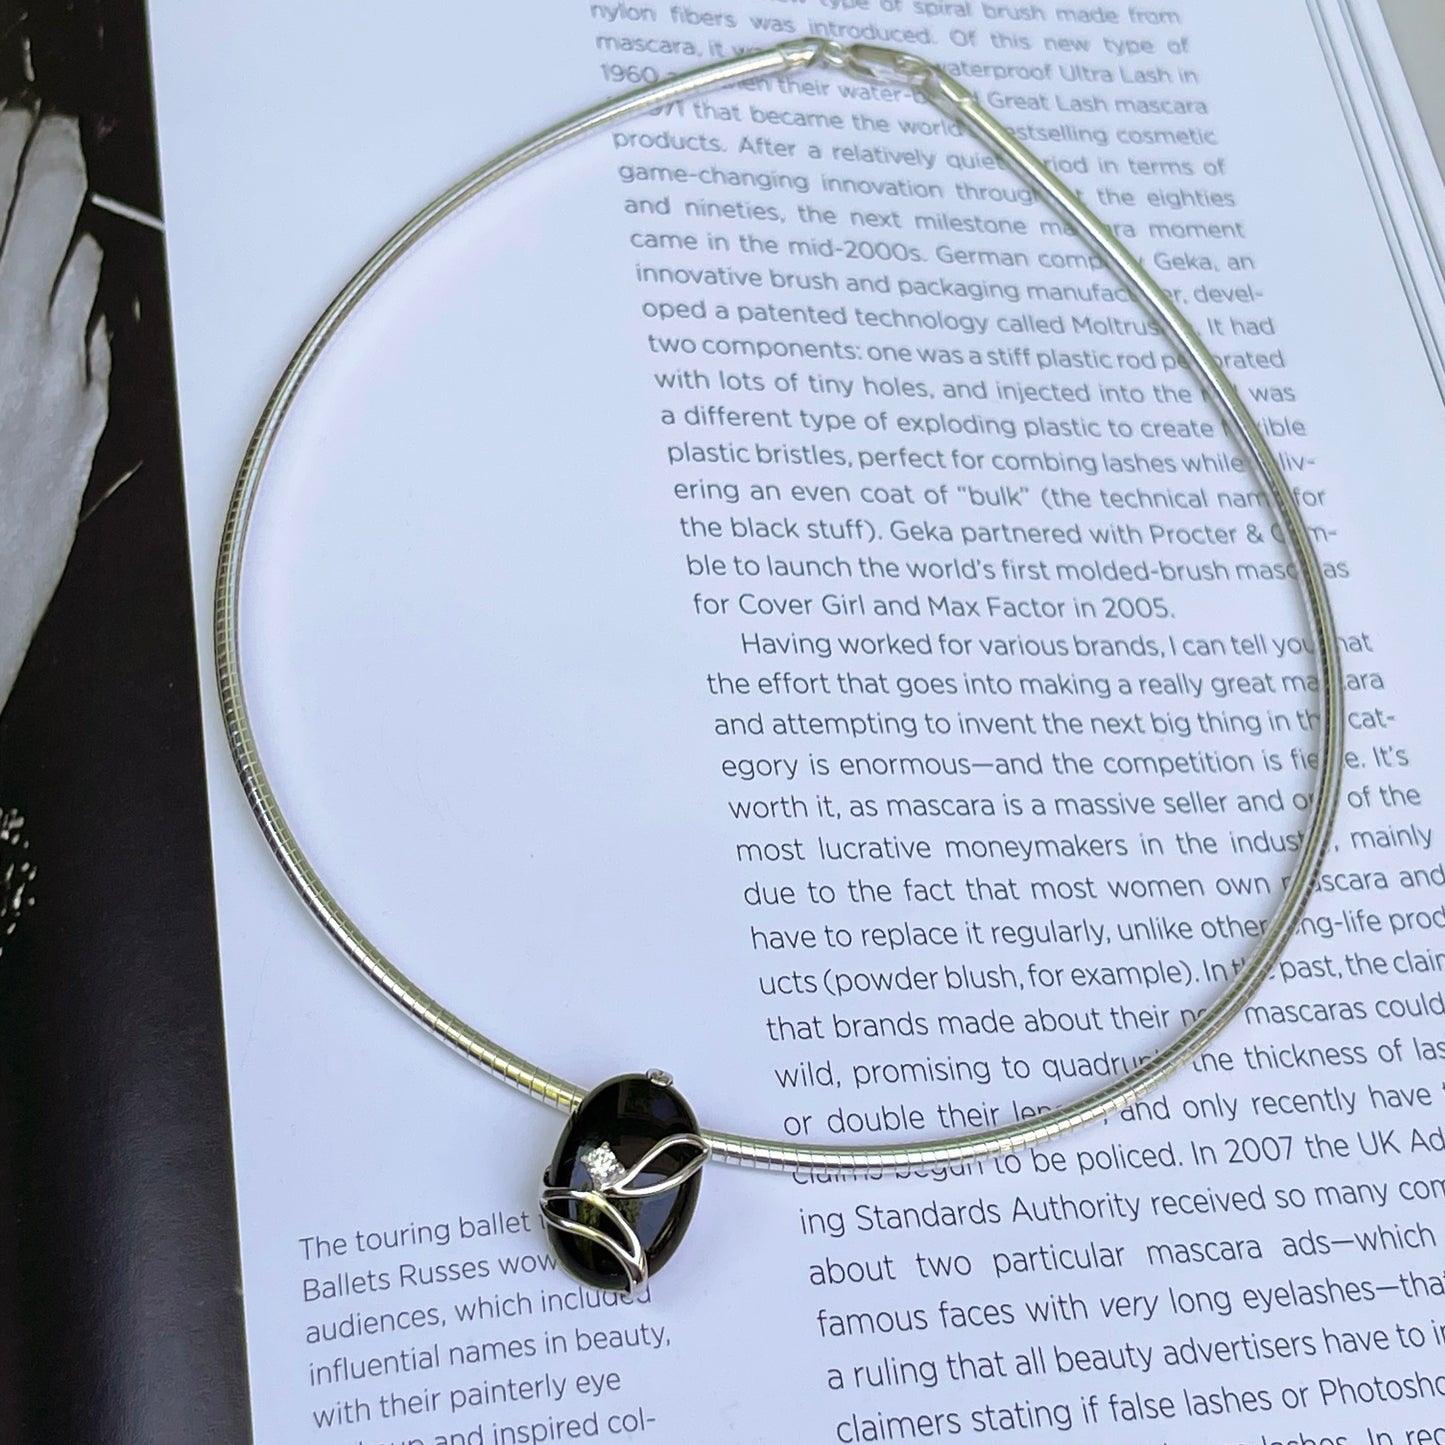 Sterling Silver Polished Oval Black Onyx + CZ Stone Pendant Omega Necklace